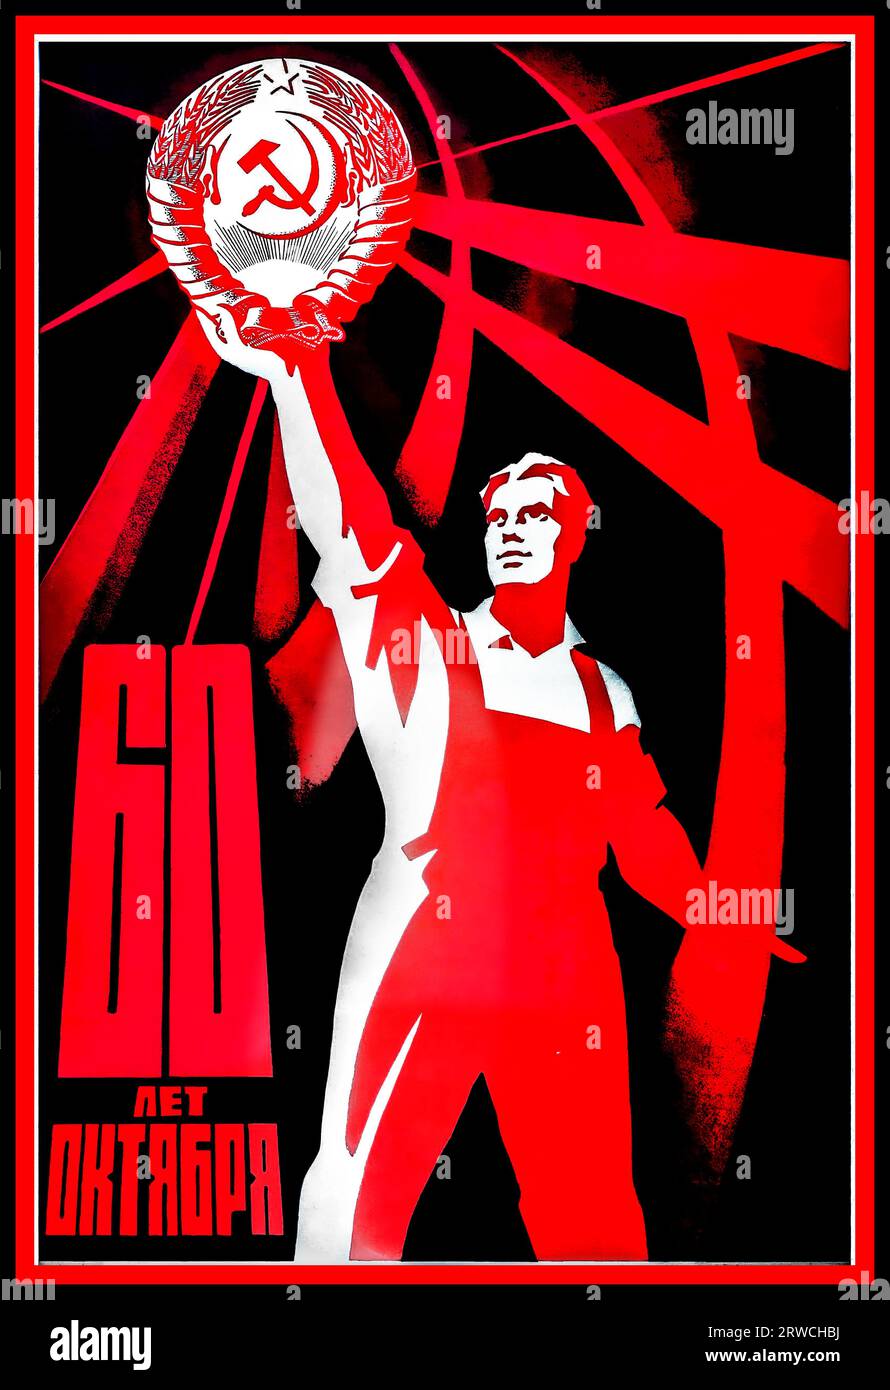 Sowjetisches Propagandaplakat mit dem Titel 60 Let Oktyabrya / 60 Years of October - Gedenken an 60 Jahre seit der Oktoberrevolution. Das Design zeigt einen UdSSR-Arbeiter in einem Overall, der das kommunistische Emblem einer Sichel und eines Hammers in einem Weizenkranz hält, der von dem fünf-Punkt-Stern gekrönt wird. Der Hintergrund ist dunkelrot mit geschwungenen roten Linien - Russland, Designer: V. Briskin, Druckjahr: 1977 Stockfoto